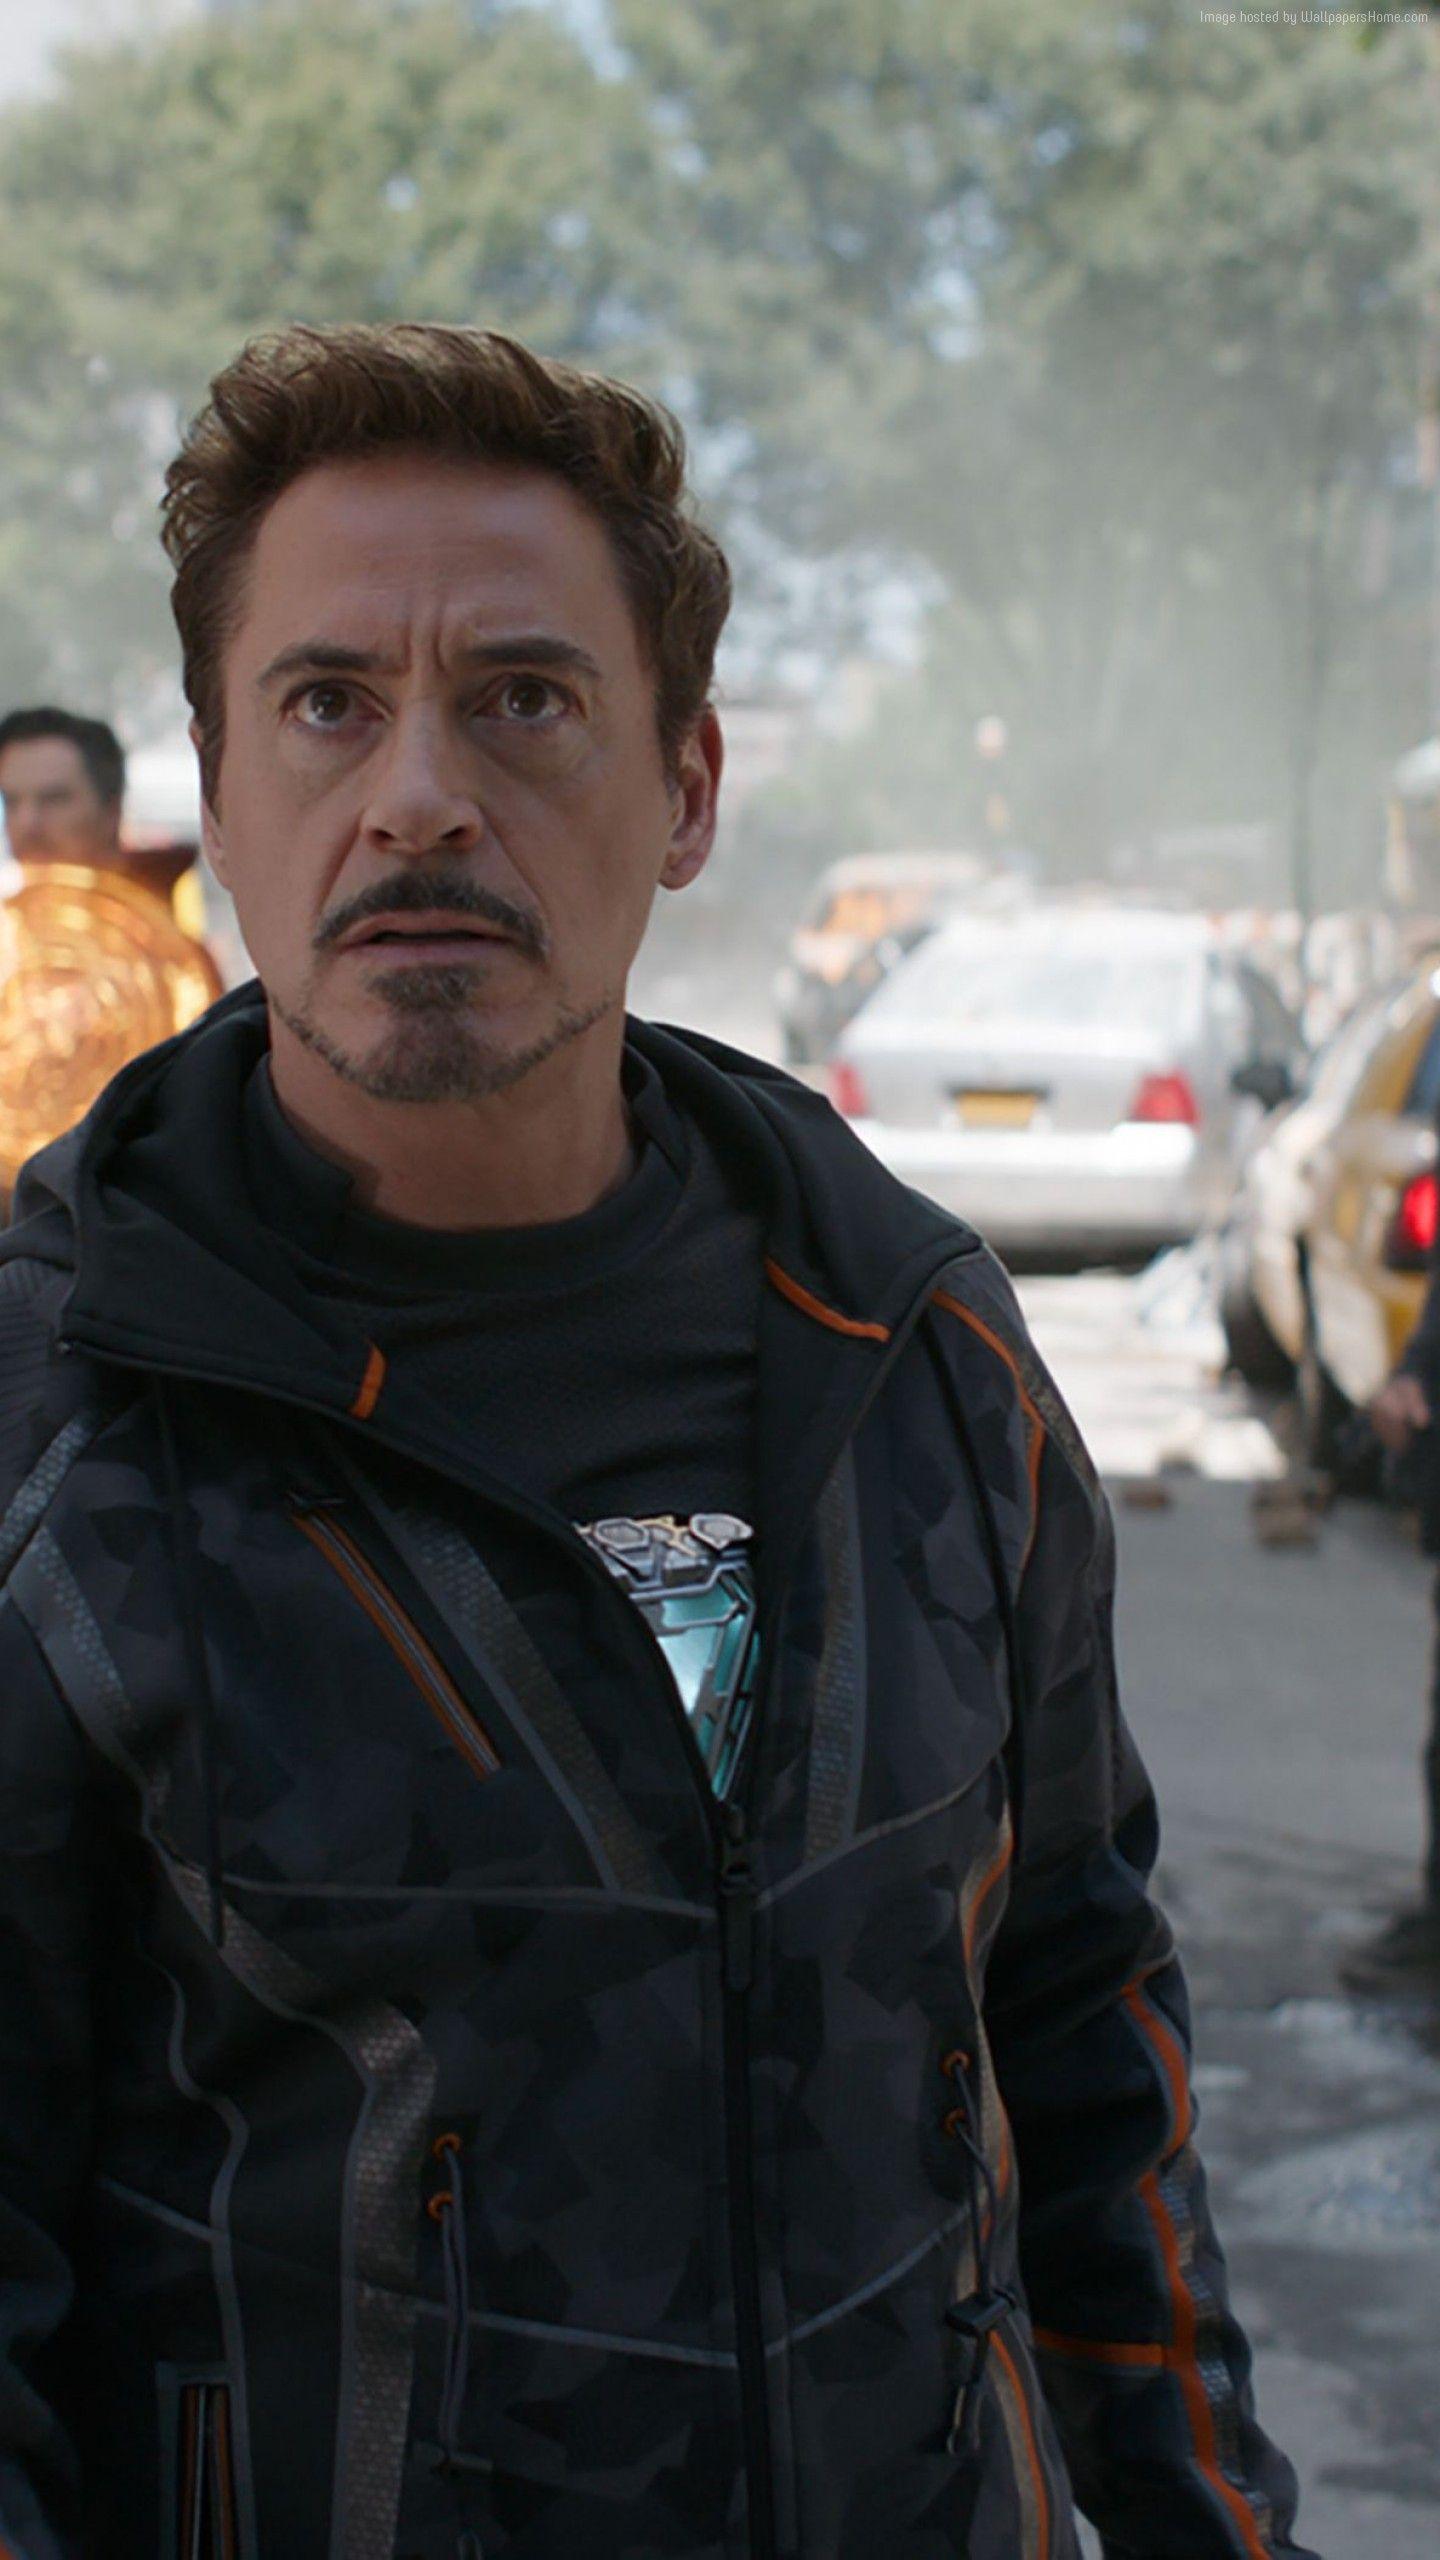 Wallpaper Avengers: Infinity War, Robert Downey Jr., Iron Man